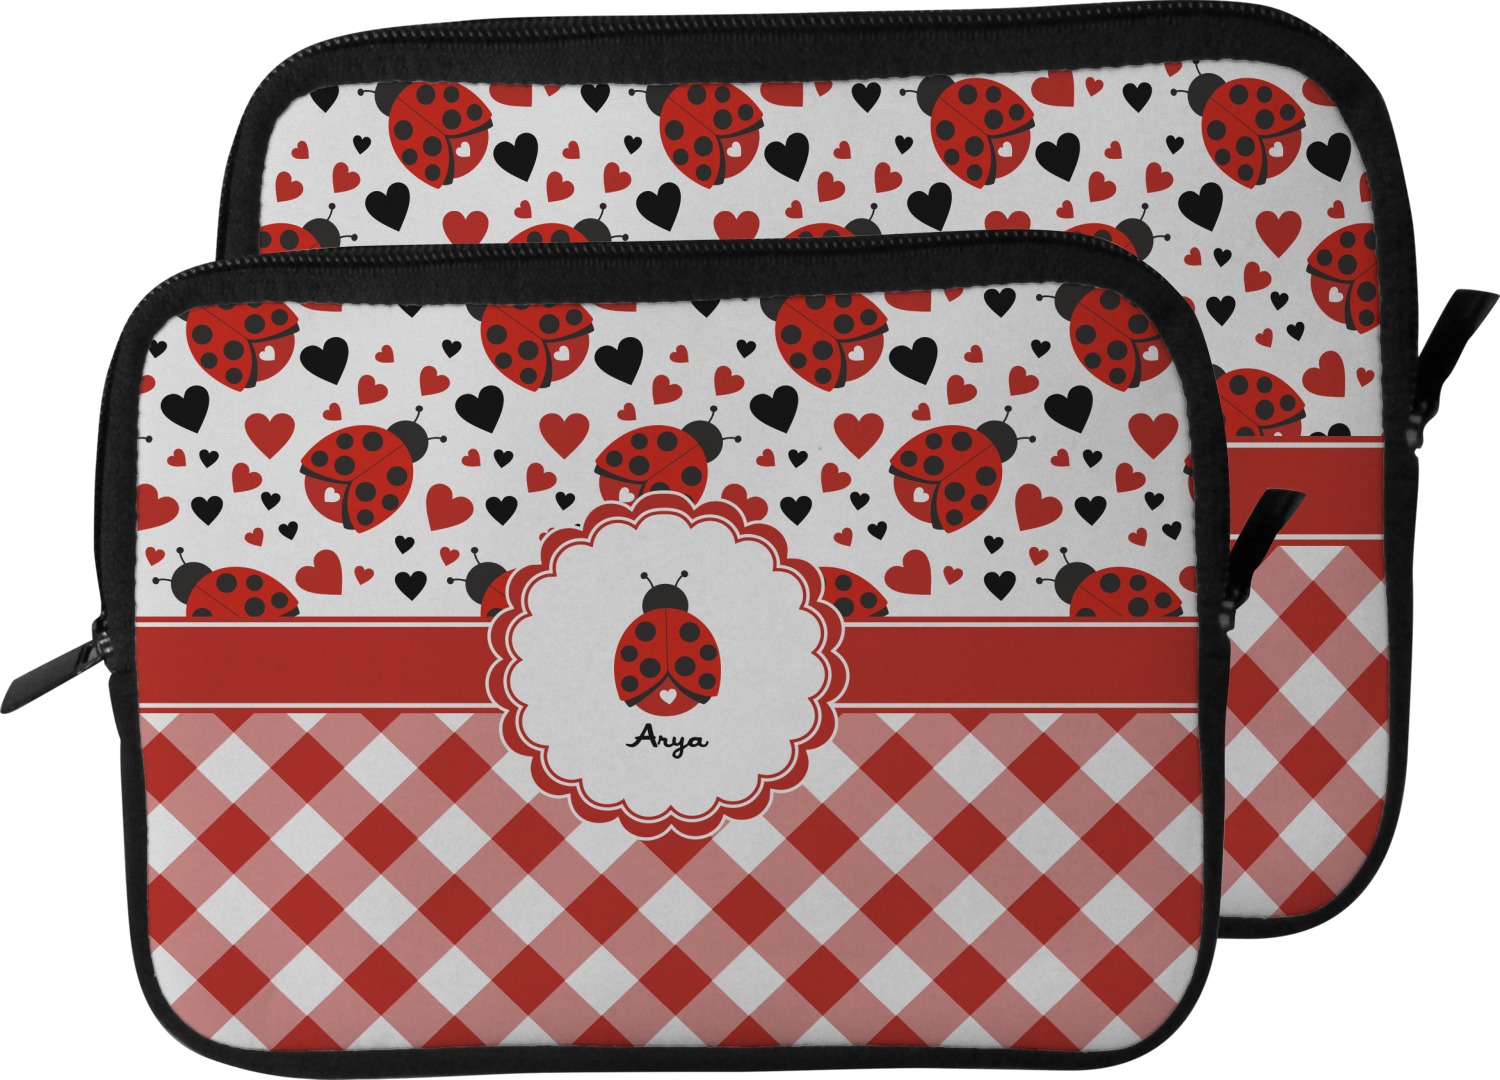 Ladybugs & Gingham Design Custom Laptop Sleeve / Case